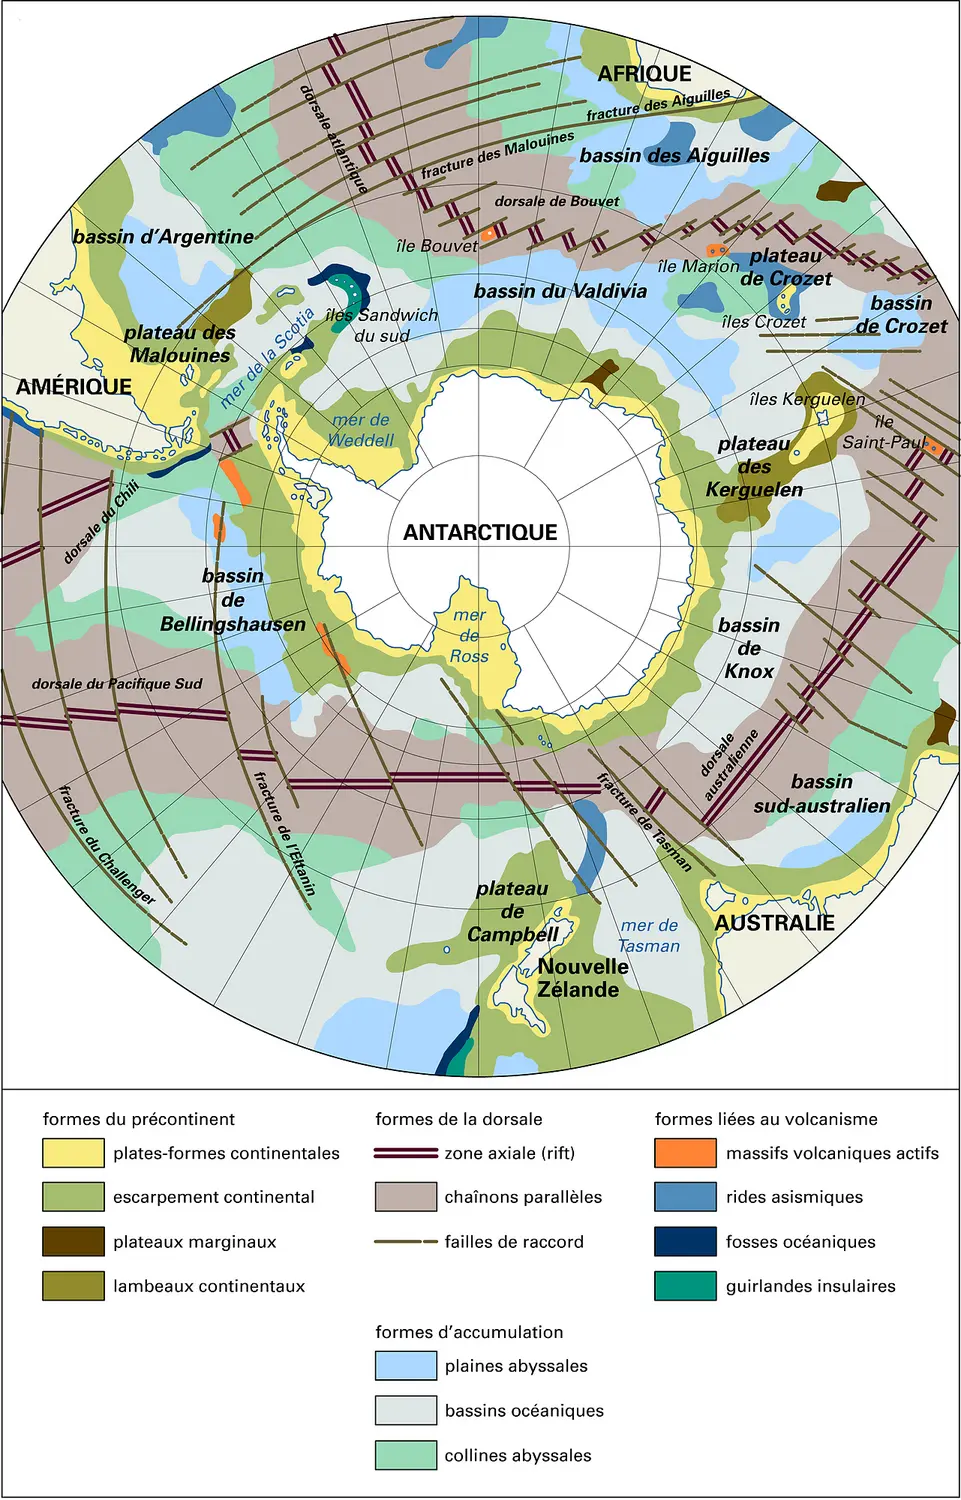 Océan Austral : tectonique et géomorphologie